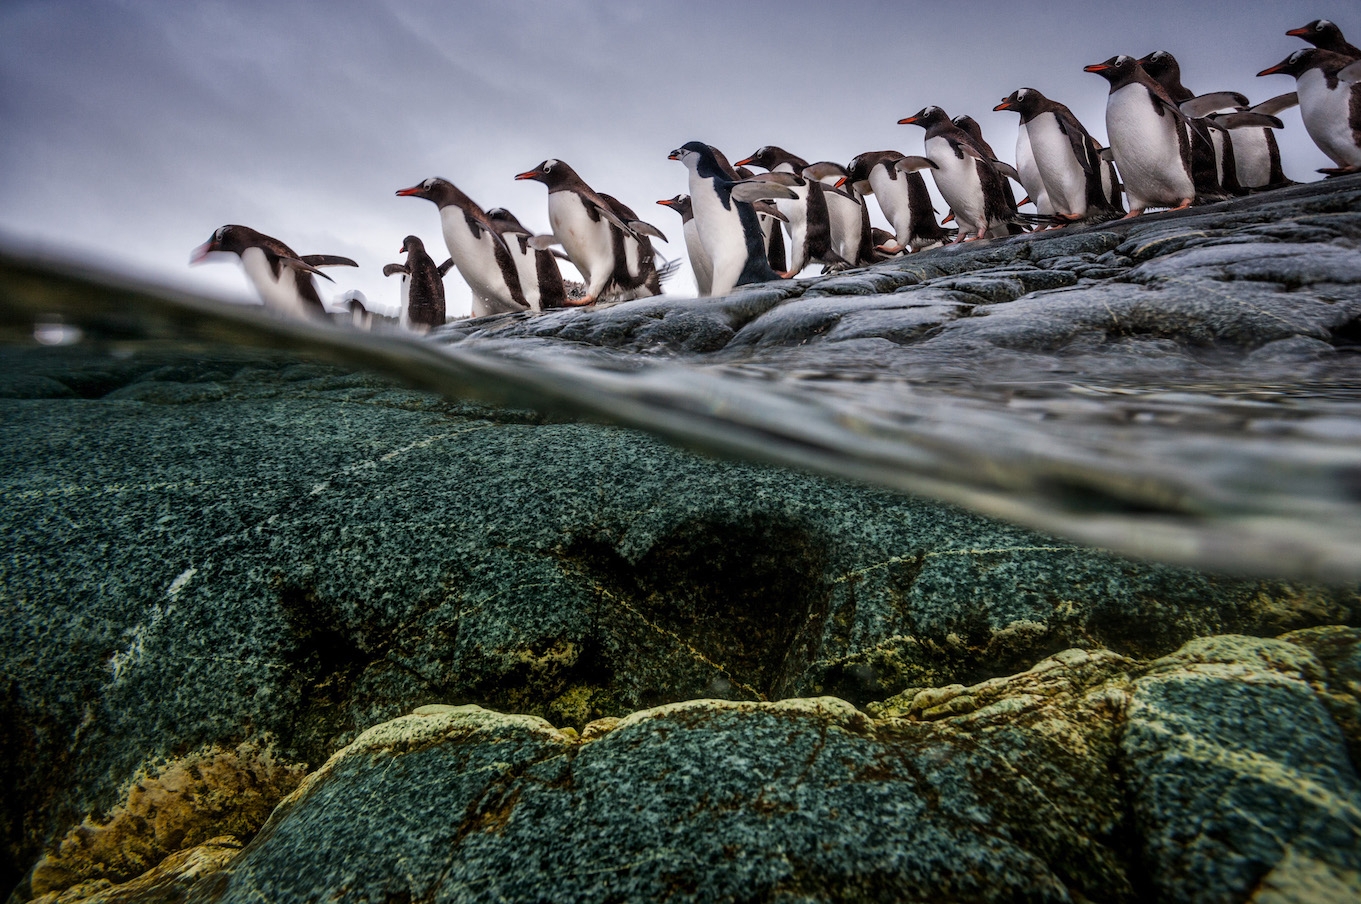 一群巴布亞企鵝和南極企鵝(chinstrap penguin,又稱頰帶企鵝、帽帶企鵝)準備潛入南極洲的冰冷水域覓食,在低溫和強大水流之下尋找冰魚及磷蝦。潮間帶同時有捕食者和獵物出沒,牠們必須時刻保持警覺才能生存。水上水下的生活大相逕庭,但兩者卻環環相扣。